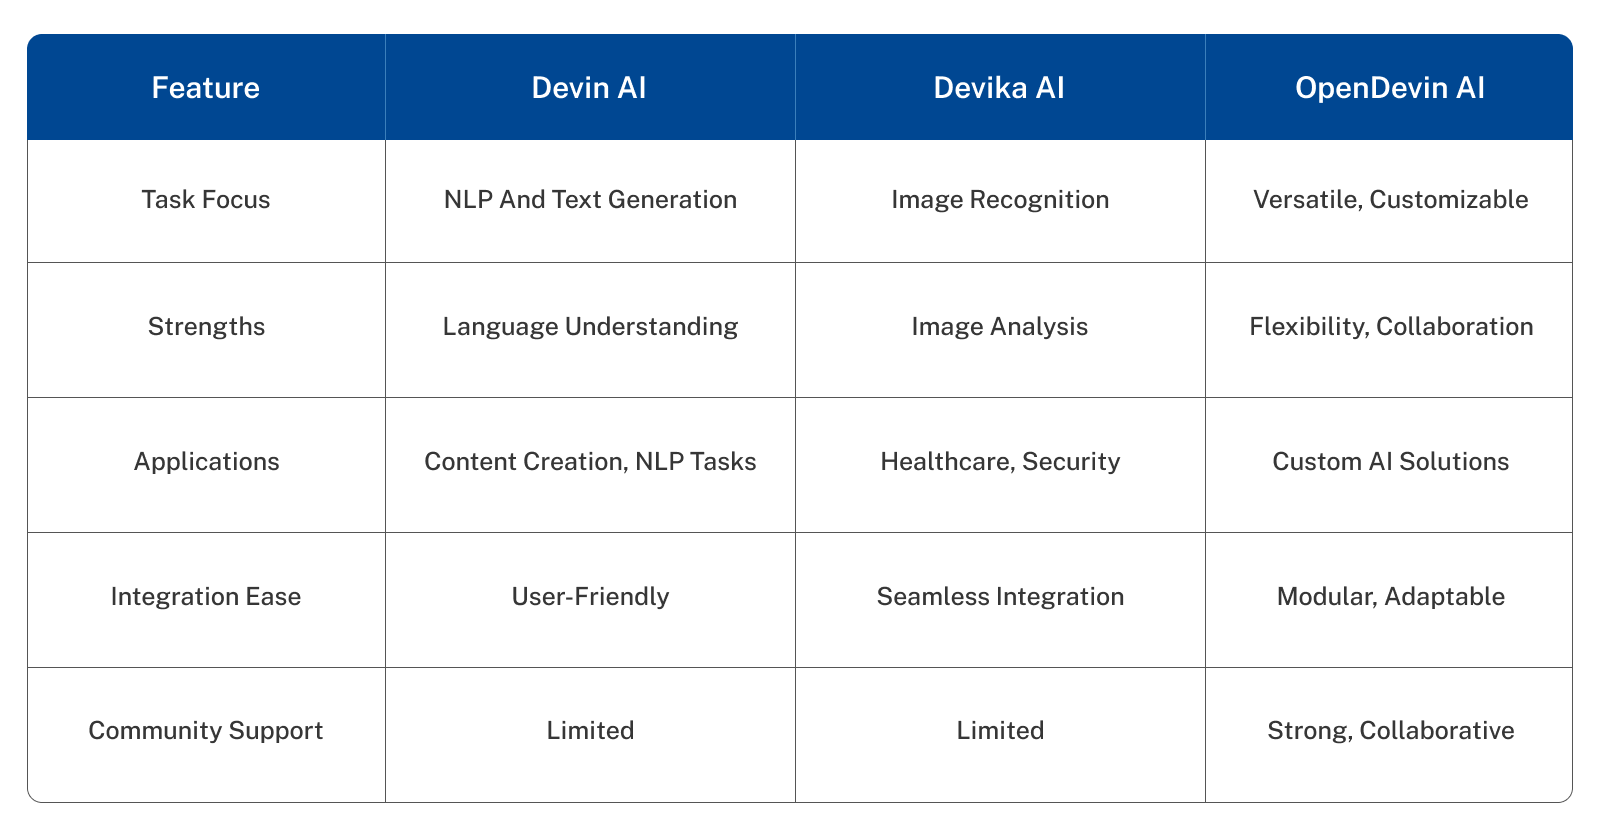 Comparing Devin AI, Devika AI, and OpenDevin AI